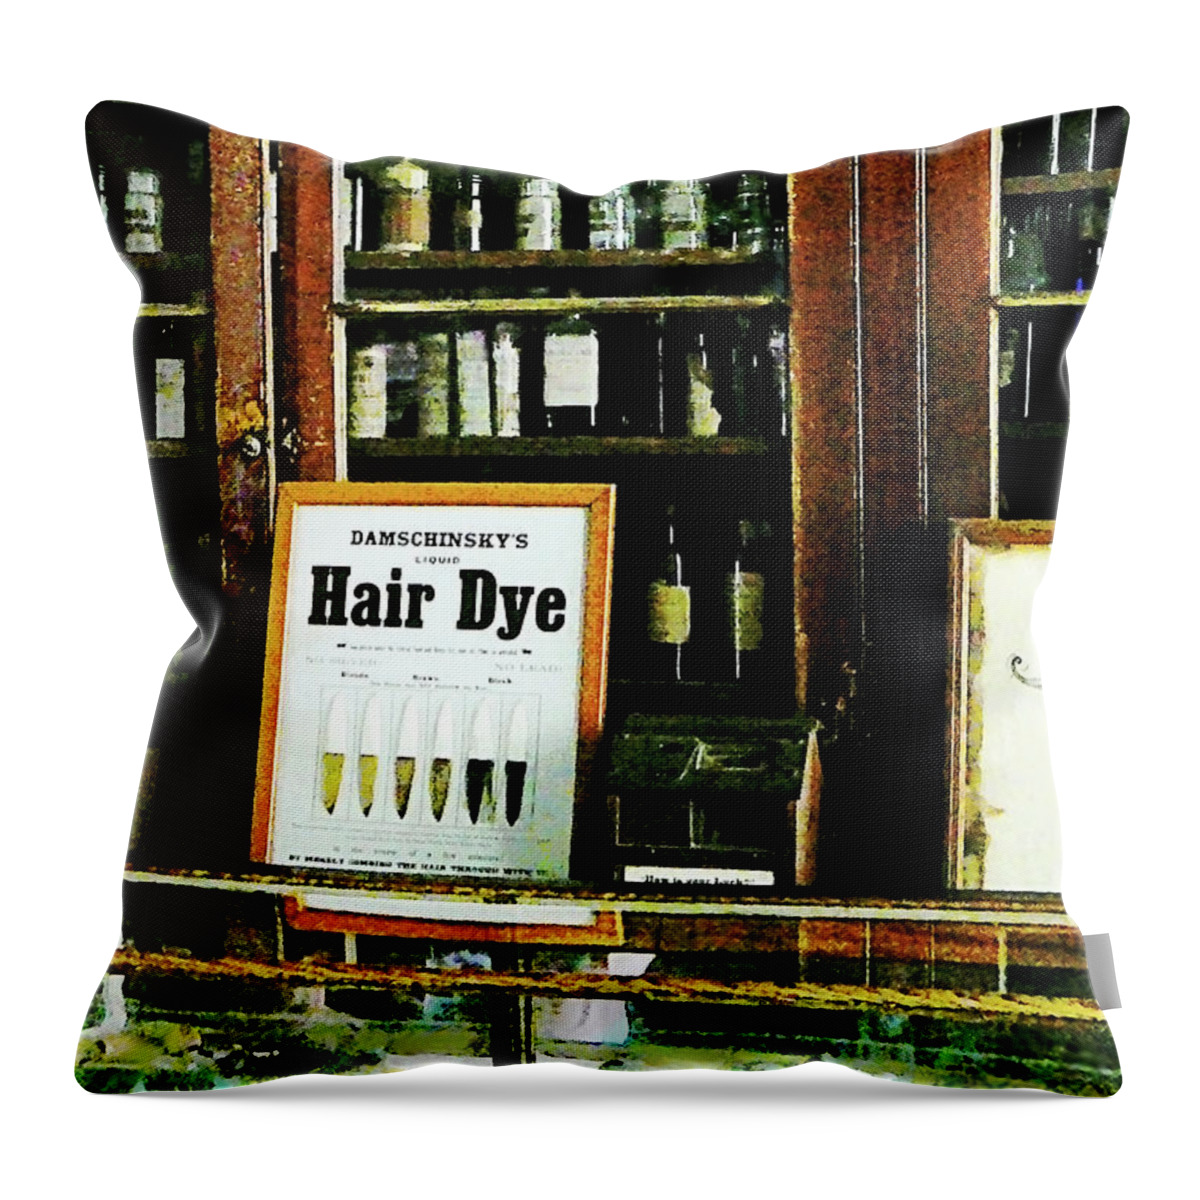 Hair Dye Throw Pillow featuring the photograph Barber - Hair Dye by Susan Savad